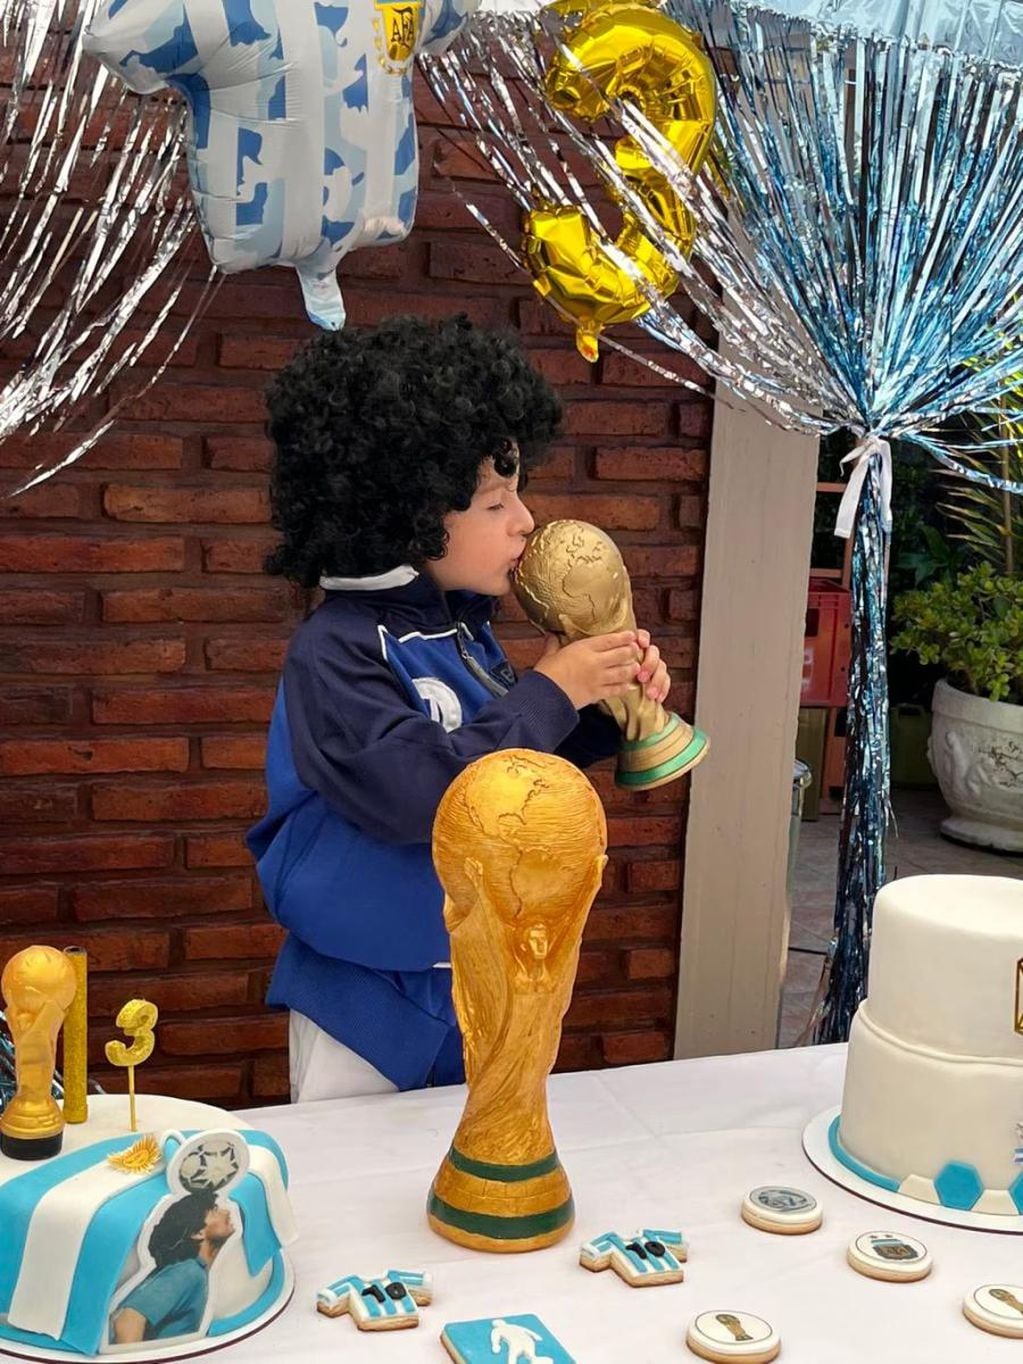 Simón besando la Copa del Mundo.